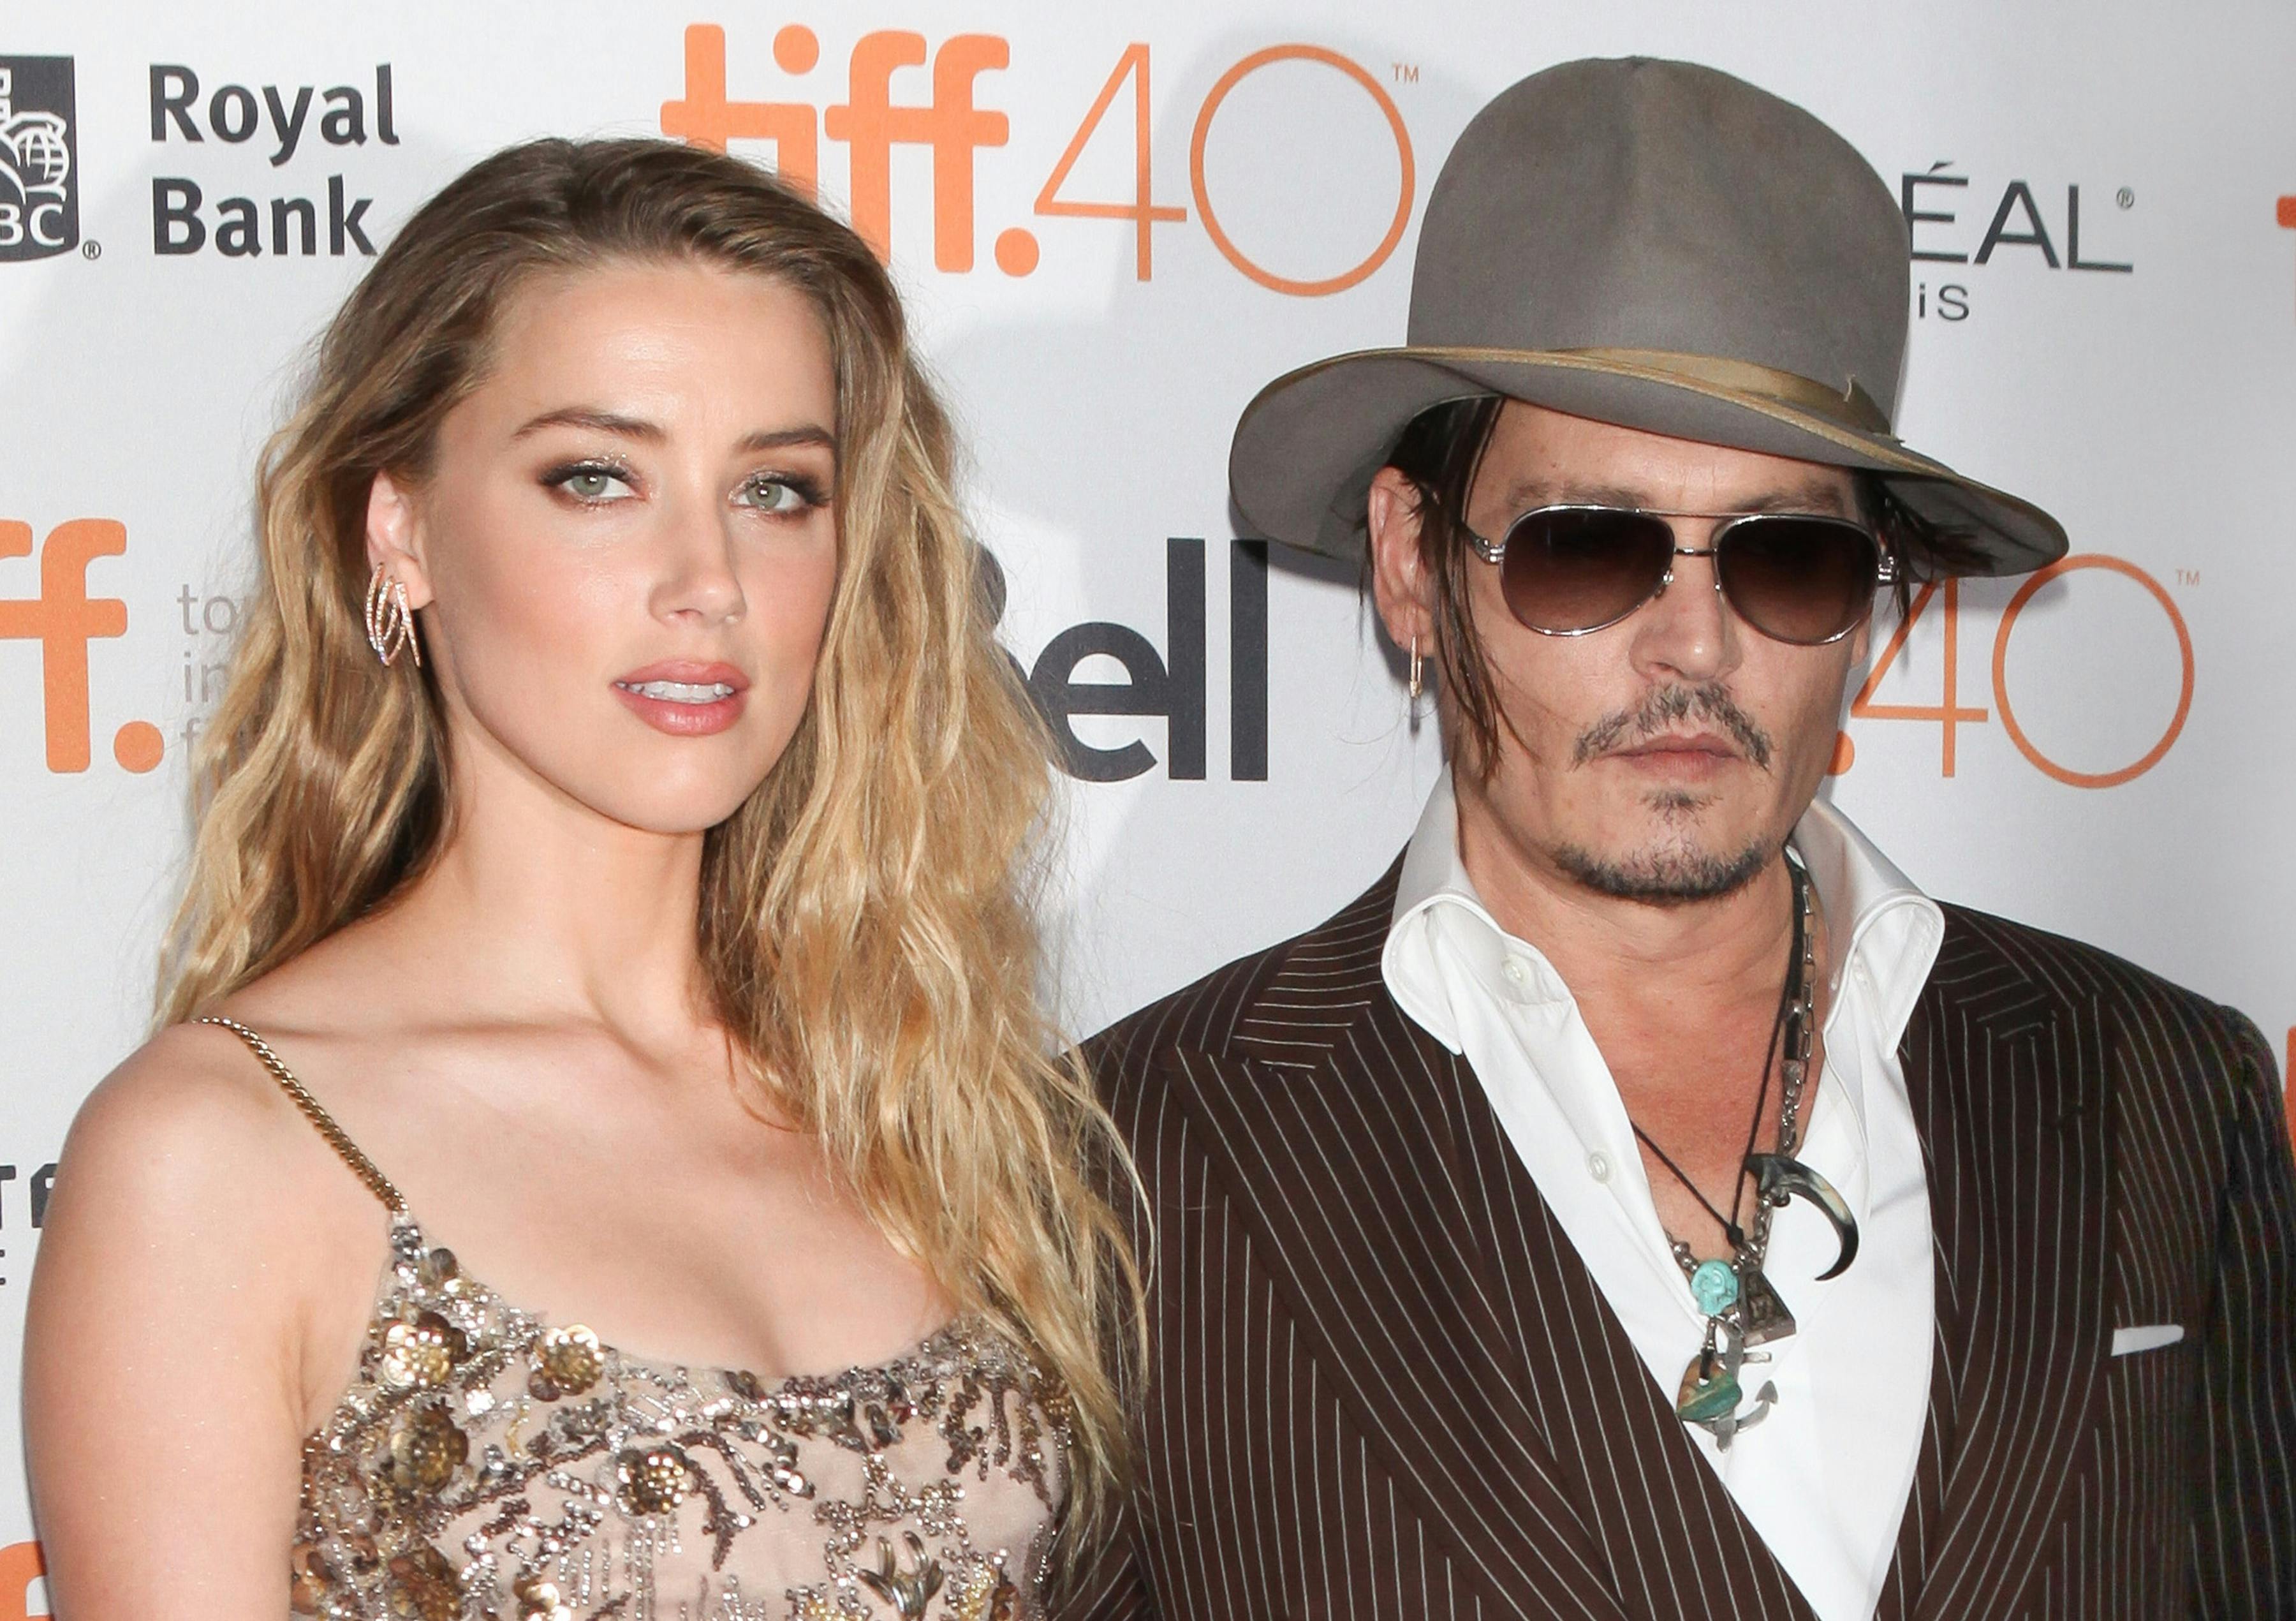 Før de lå i juridisk krig med hinanden, var de ægtefolk - fra 2015 til 2017 var de to skuespillere Johnny Depp og Amber Heard gift.&nbsp;
